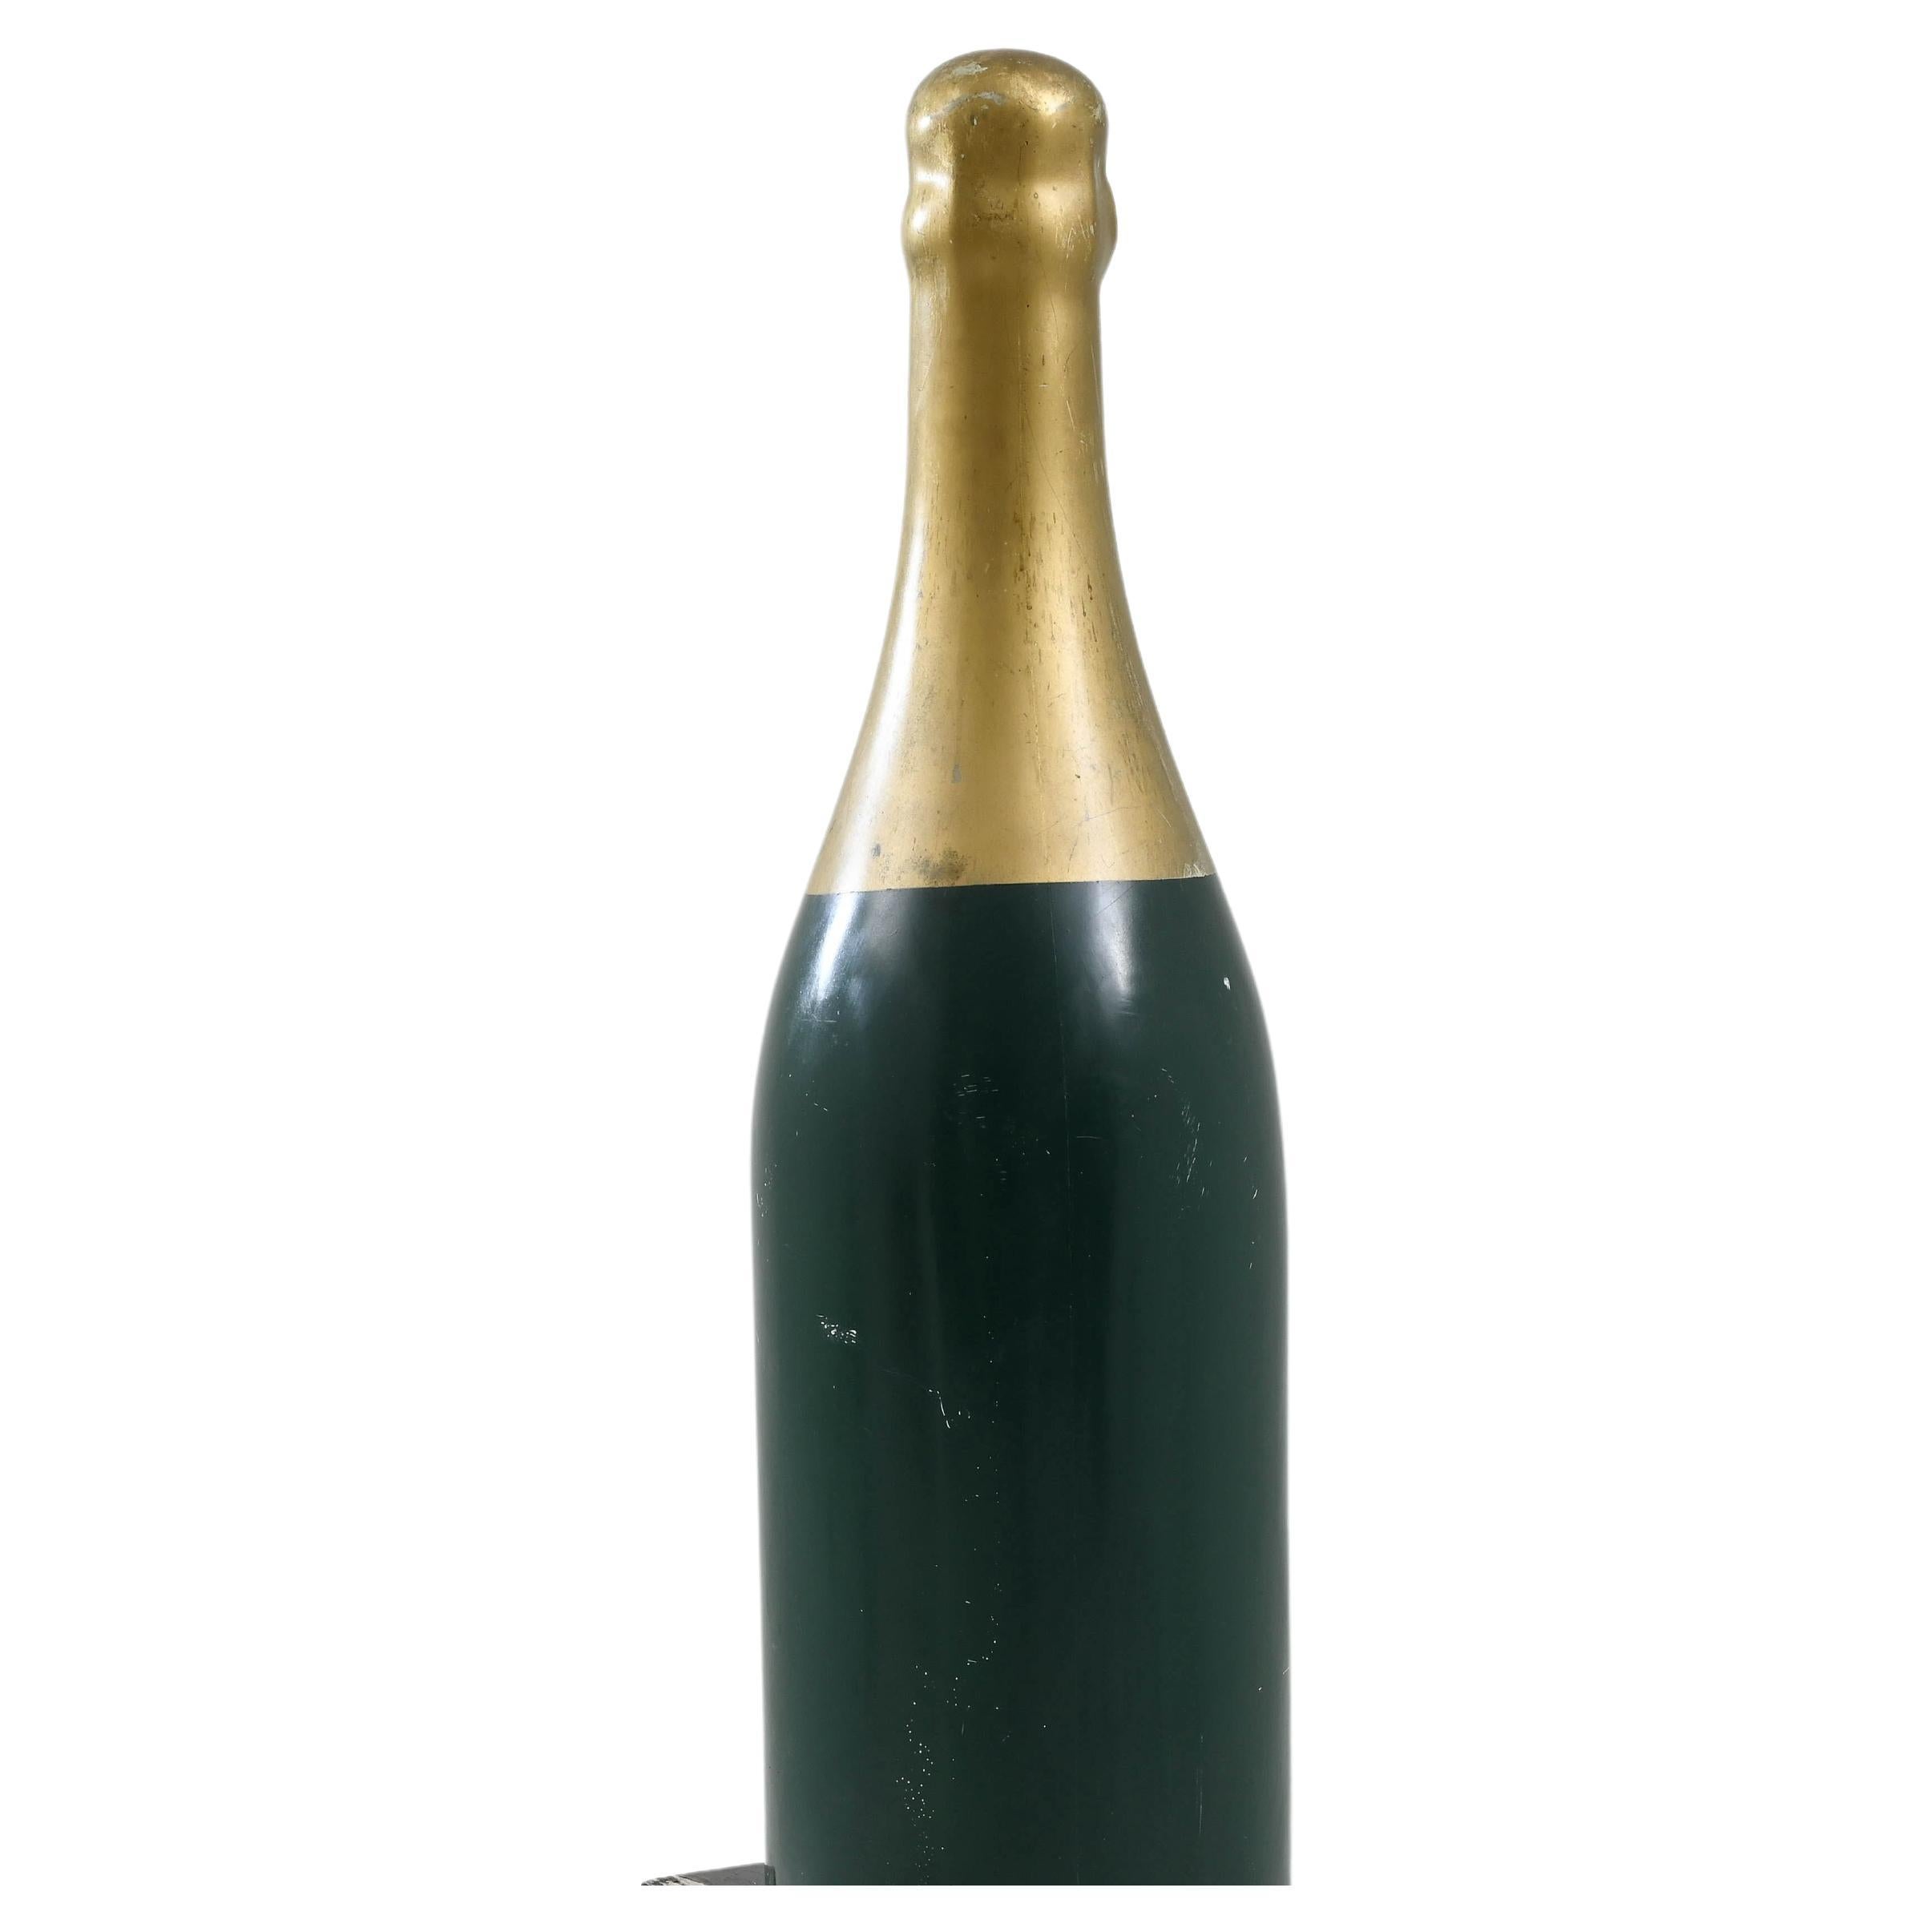 Élevez votre espace avec cette décoration de vin en bois française du 20e siècle qui attire l'attention. La base vert vif, ornée d'une luxueuse finition dorée au sommet, en fait une pièce d'apparat remarquable. Cette grande décoration pour le vin